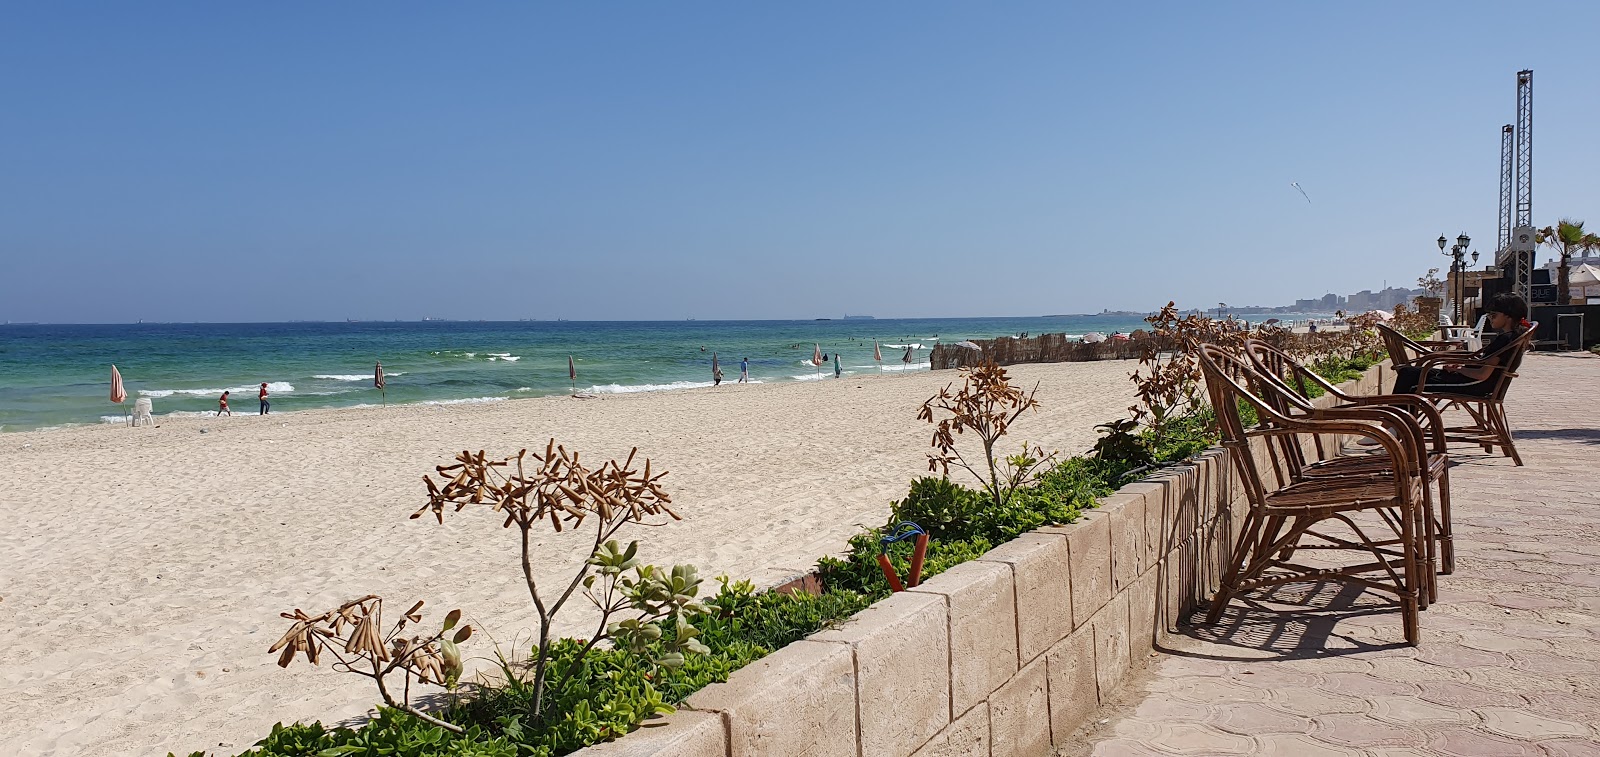 Foto af Al-Ajami Beach - populært sted blandt afslapningskendere